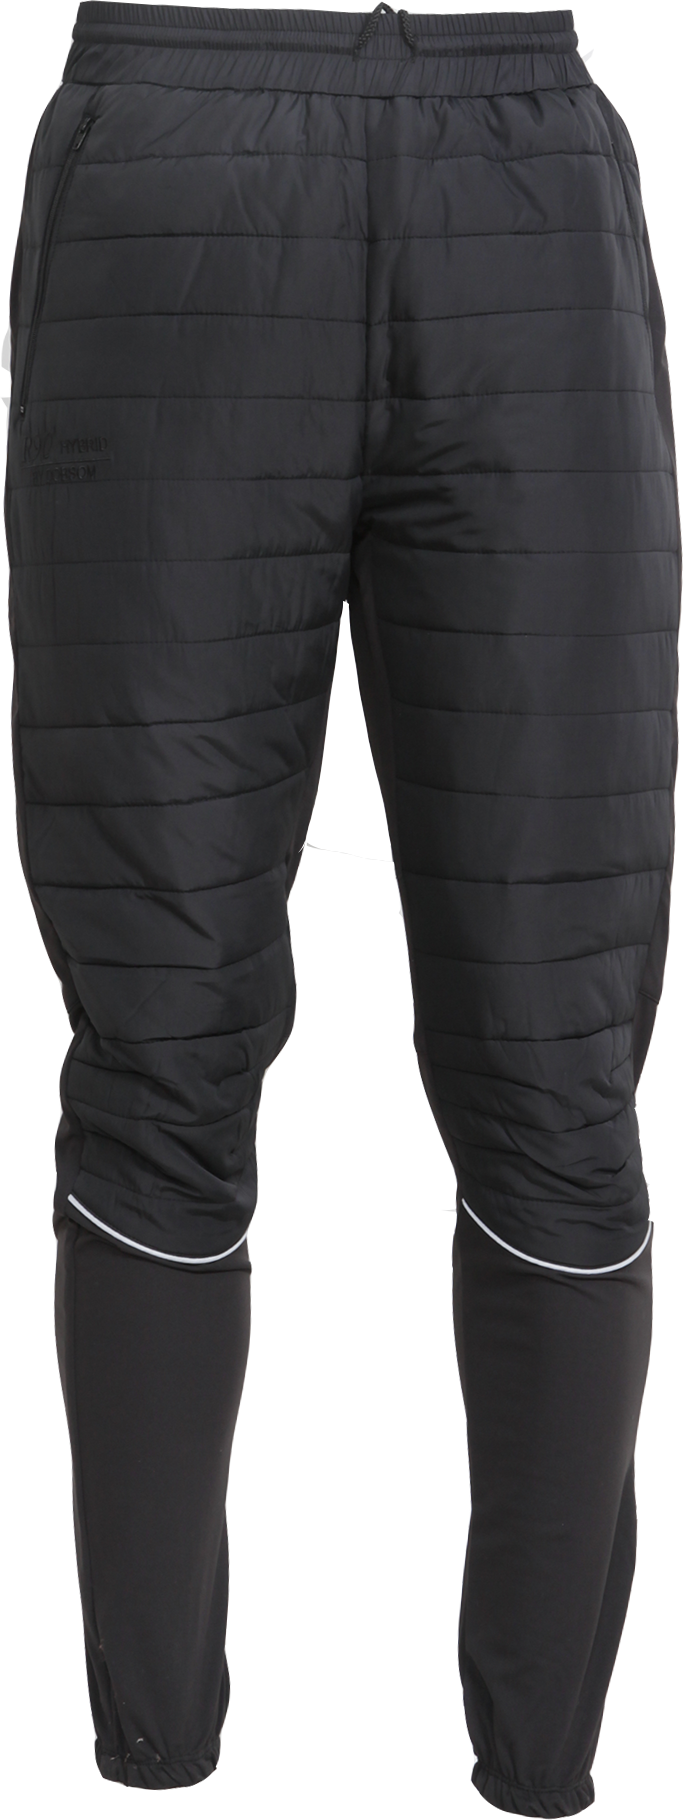 Dobsom Women’s R90 Hybrid Pants Black